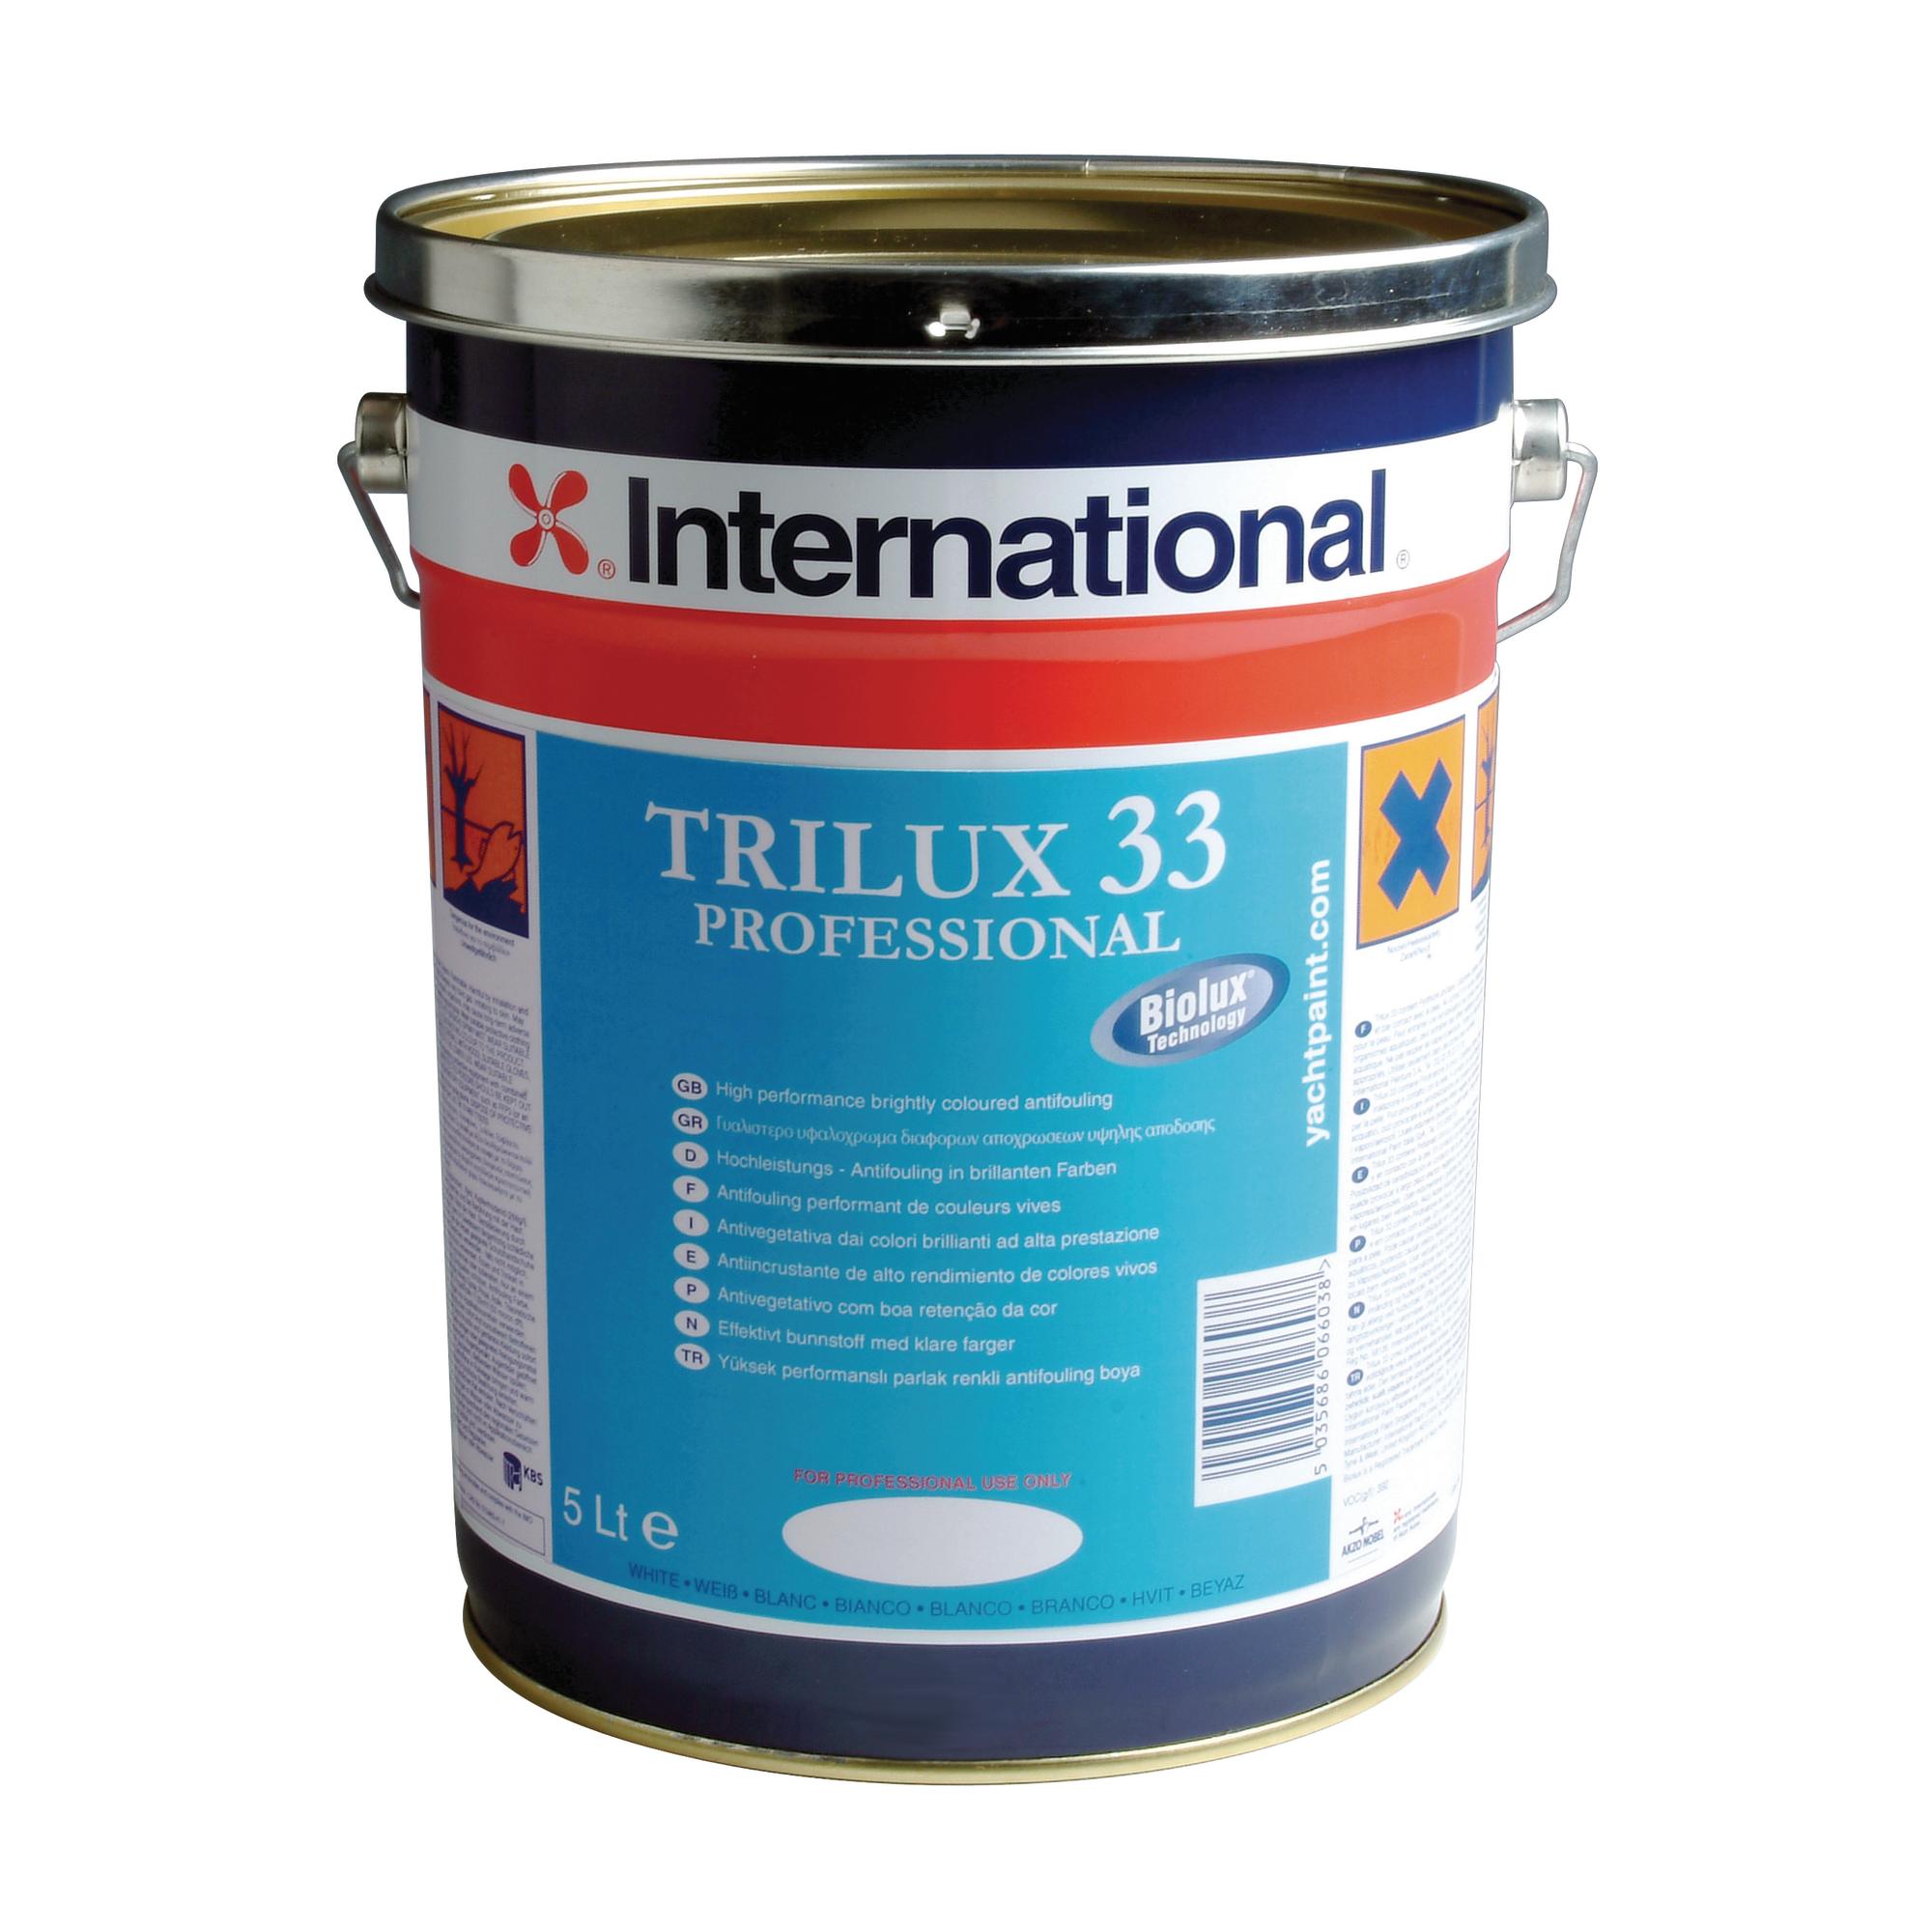 Trilux 33 | Trilux33Pro_5lt_EU_2.jpg | 1704464440